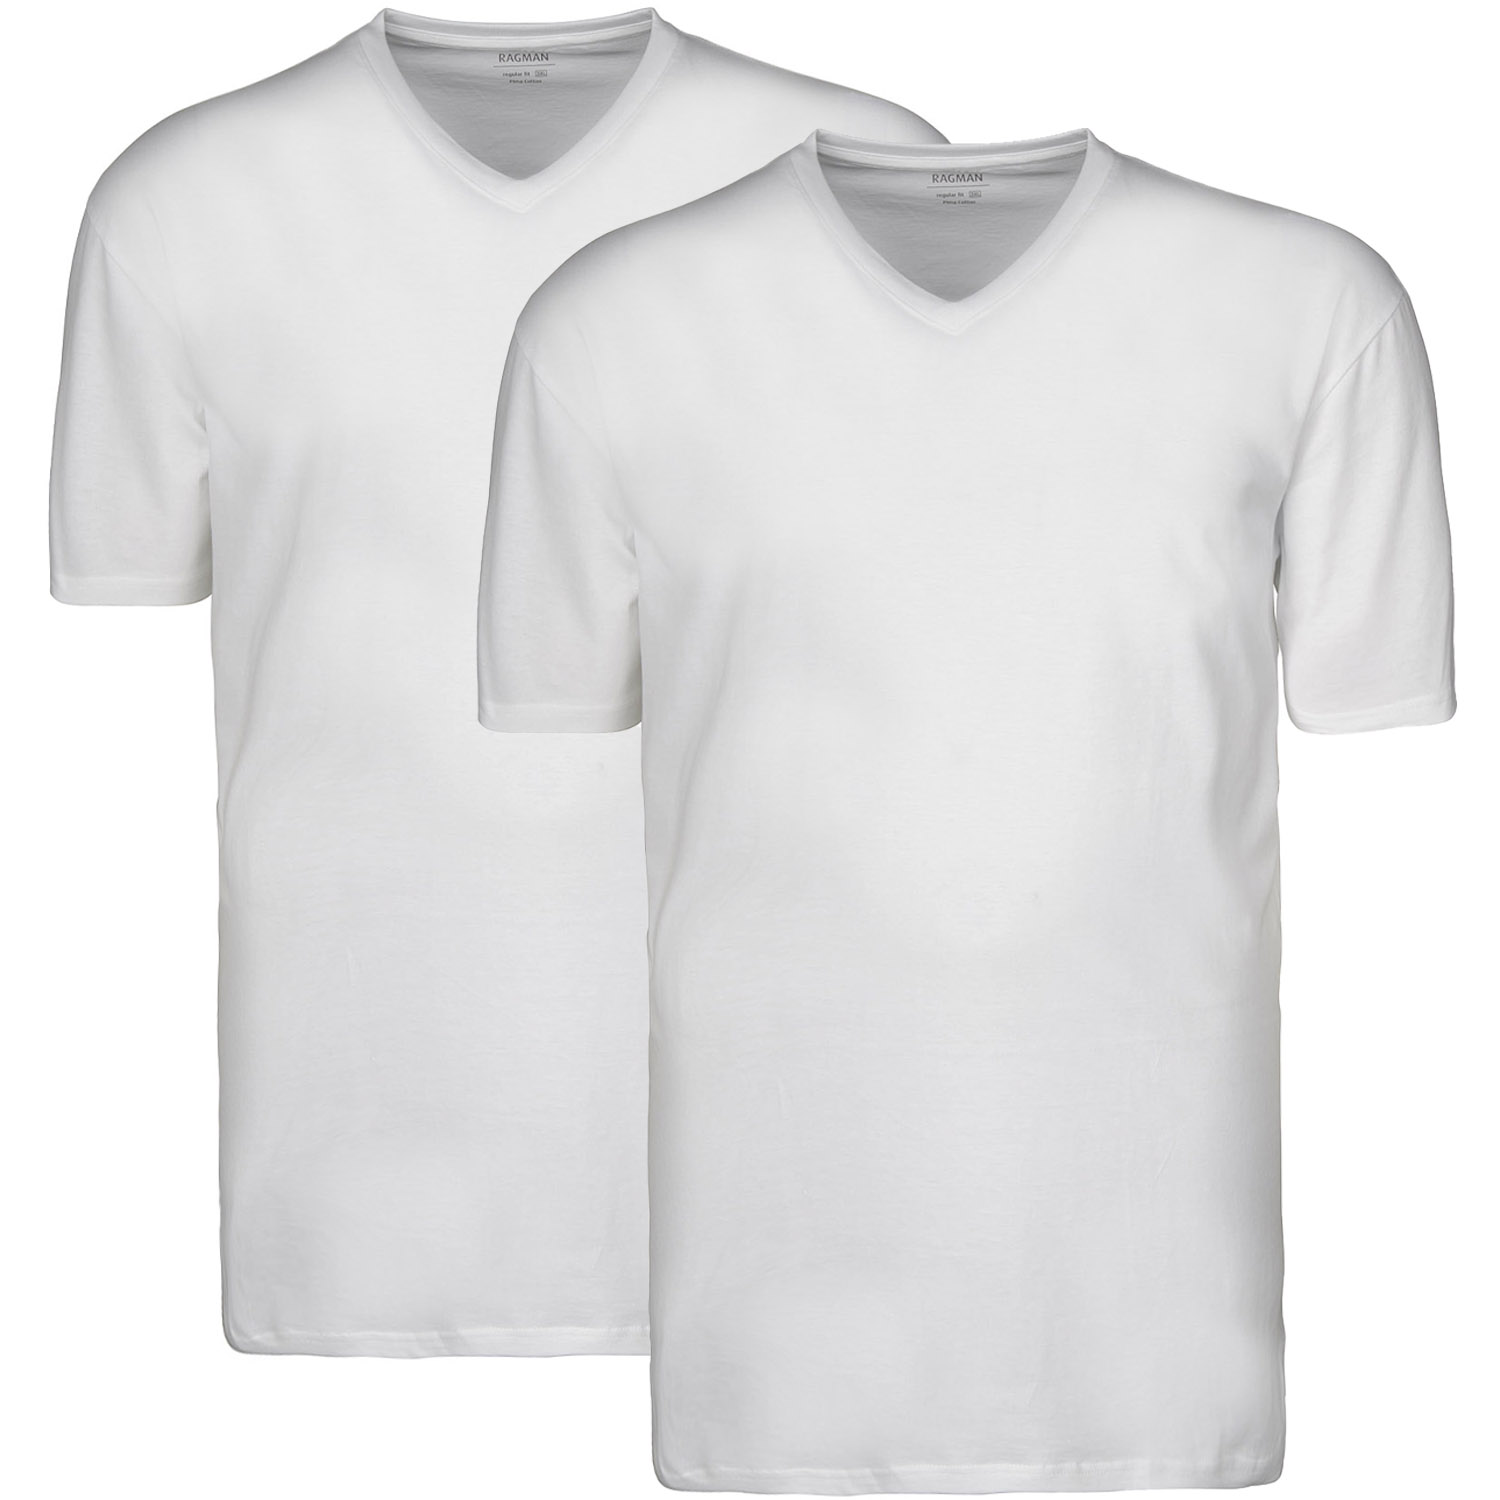 RAGMAN T-Shirt, Herrenmode Doppelpack in Übergrößen weiß kaufen